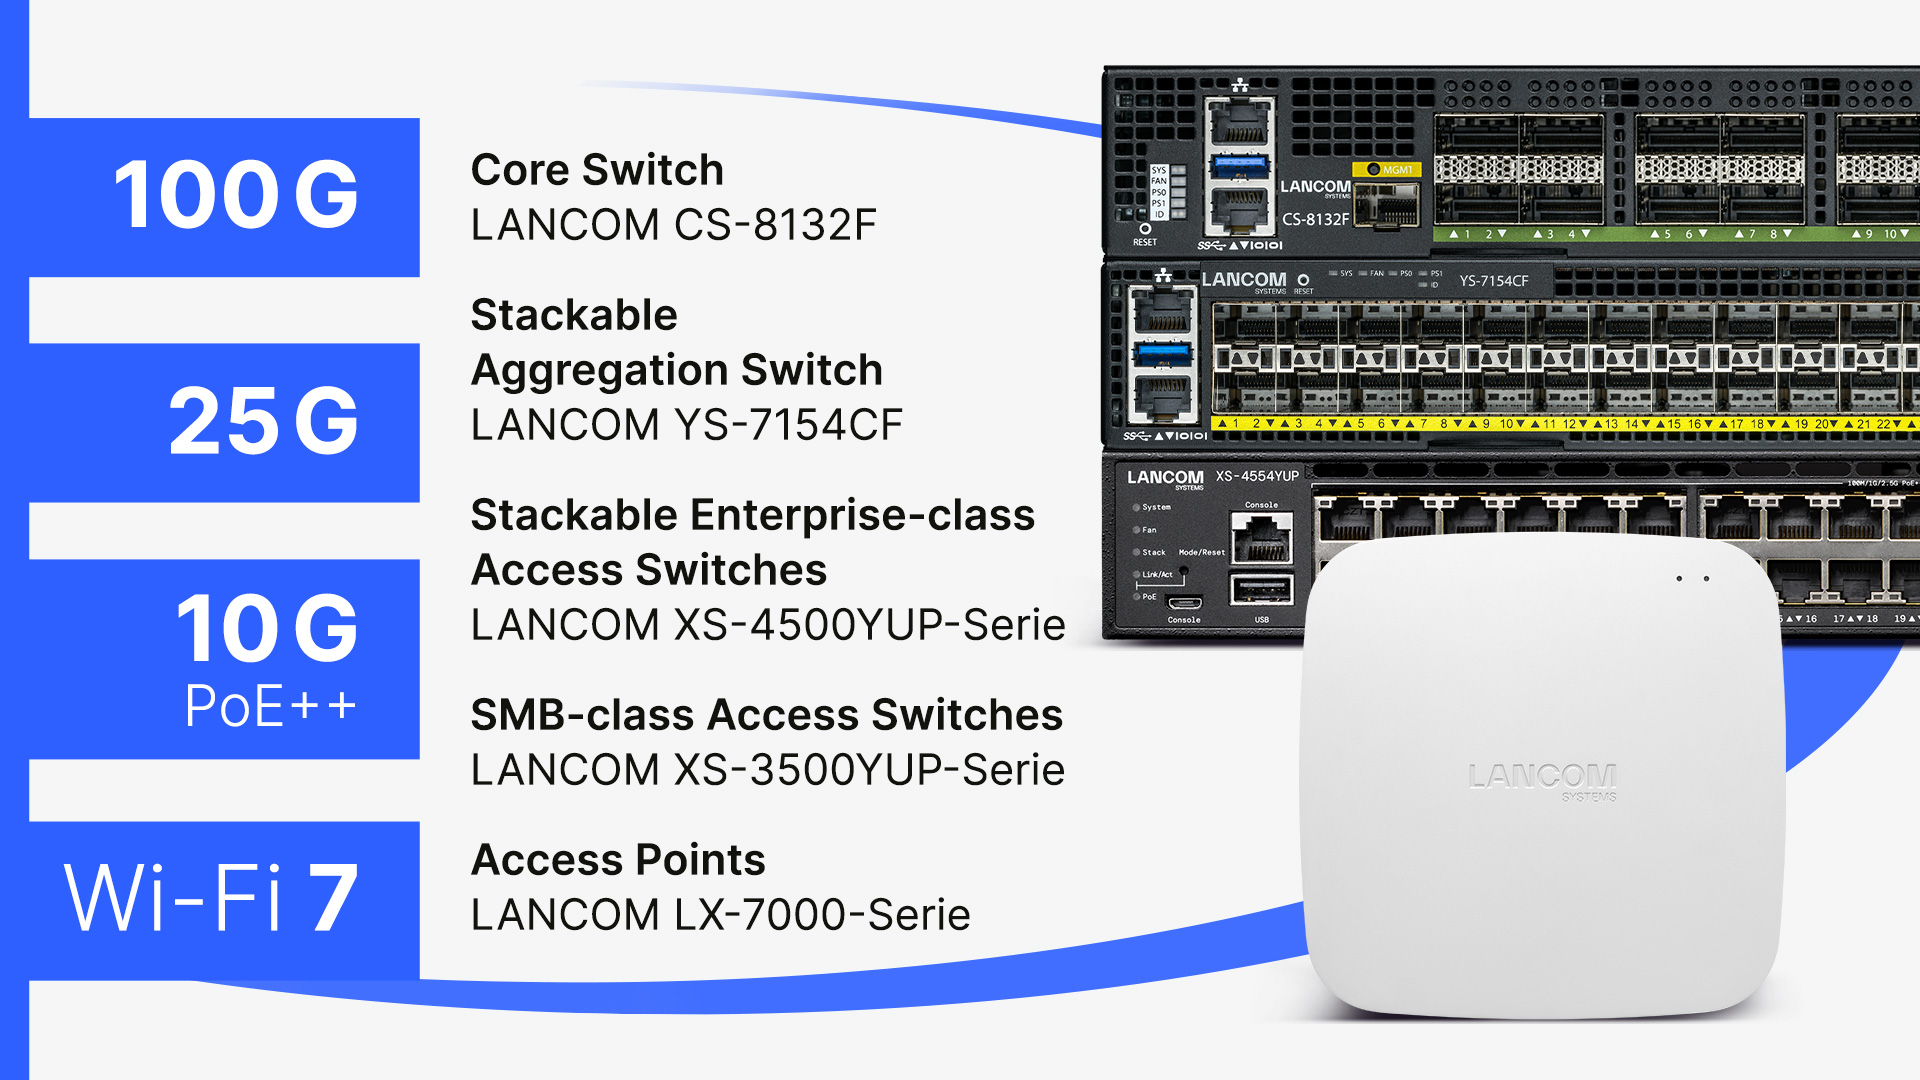 Rechts: Collage des LANCOM Access Points LX-7500 und der LANCOM Switches CS-8132F, YS-7154CF und XS-4554YUP, links: Namensangaben der Produkte sowie Highlight-Features wie 100G, 25G, 10G PoE++ und Wi-Fi 7